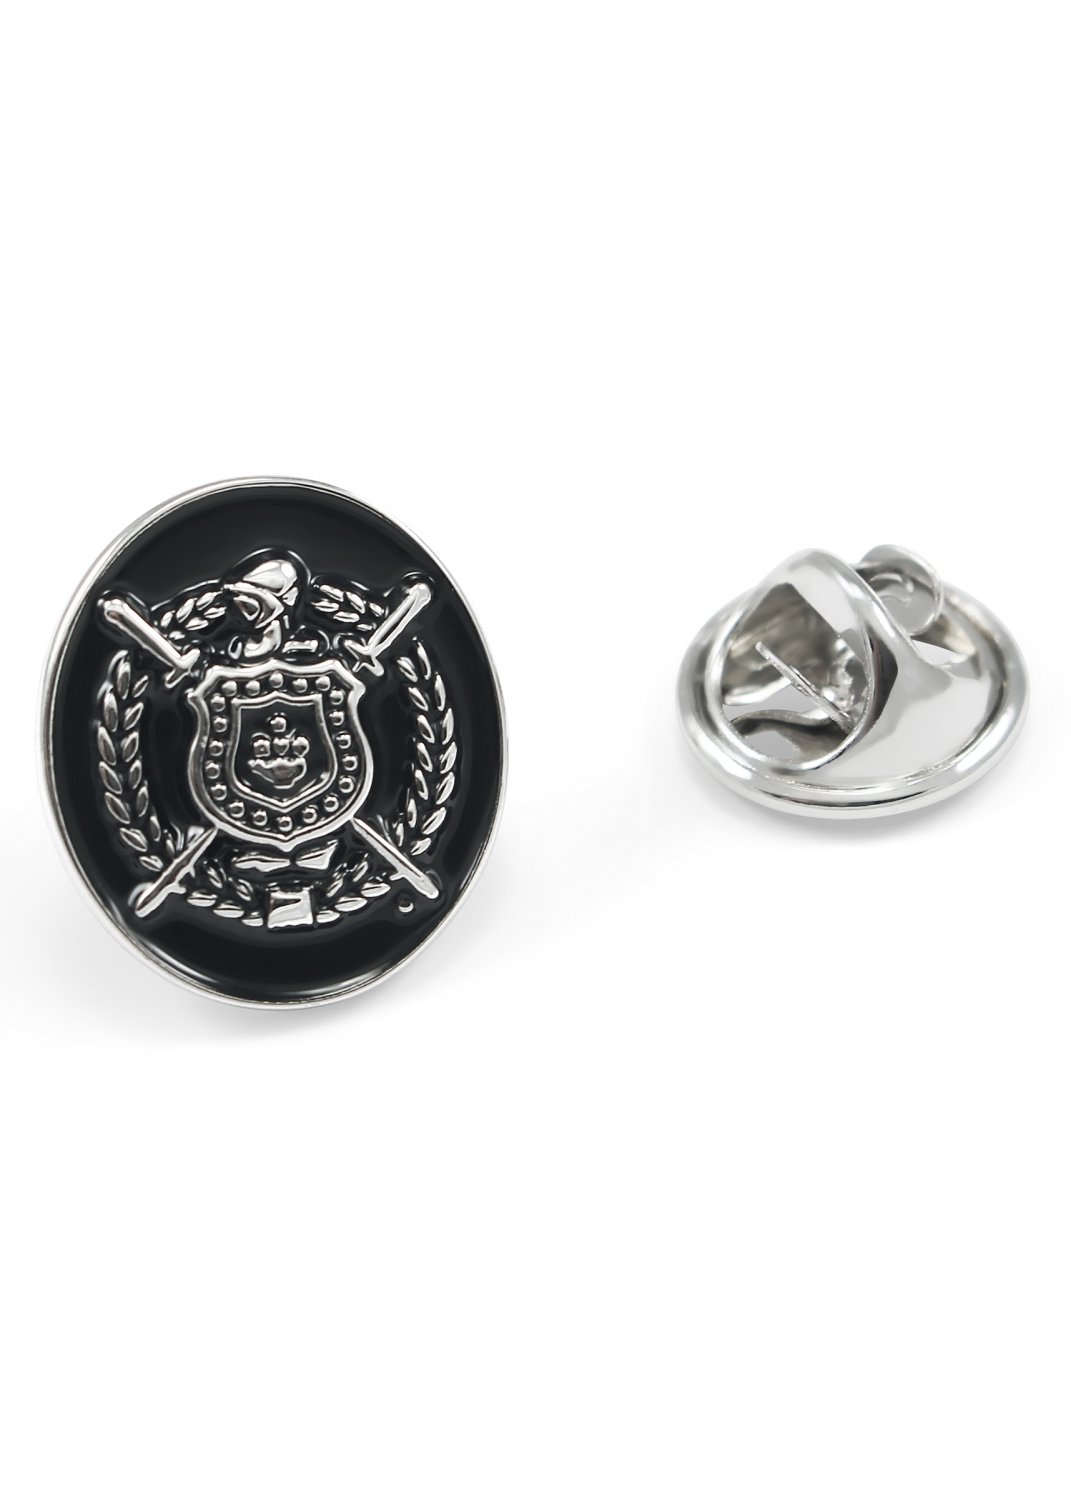 Omega Psi Phi Fraternity Silver Lapel Pin